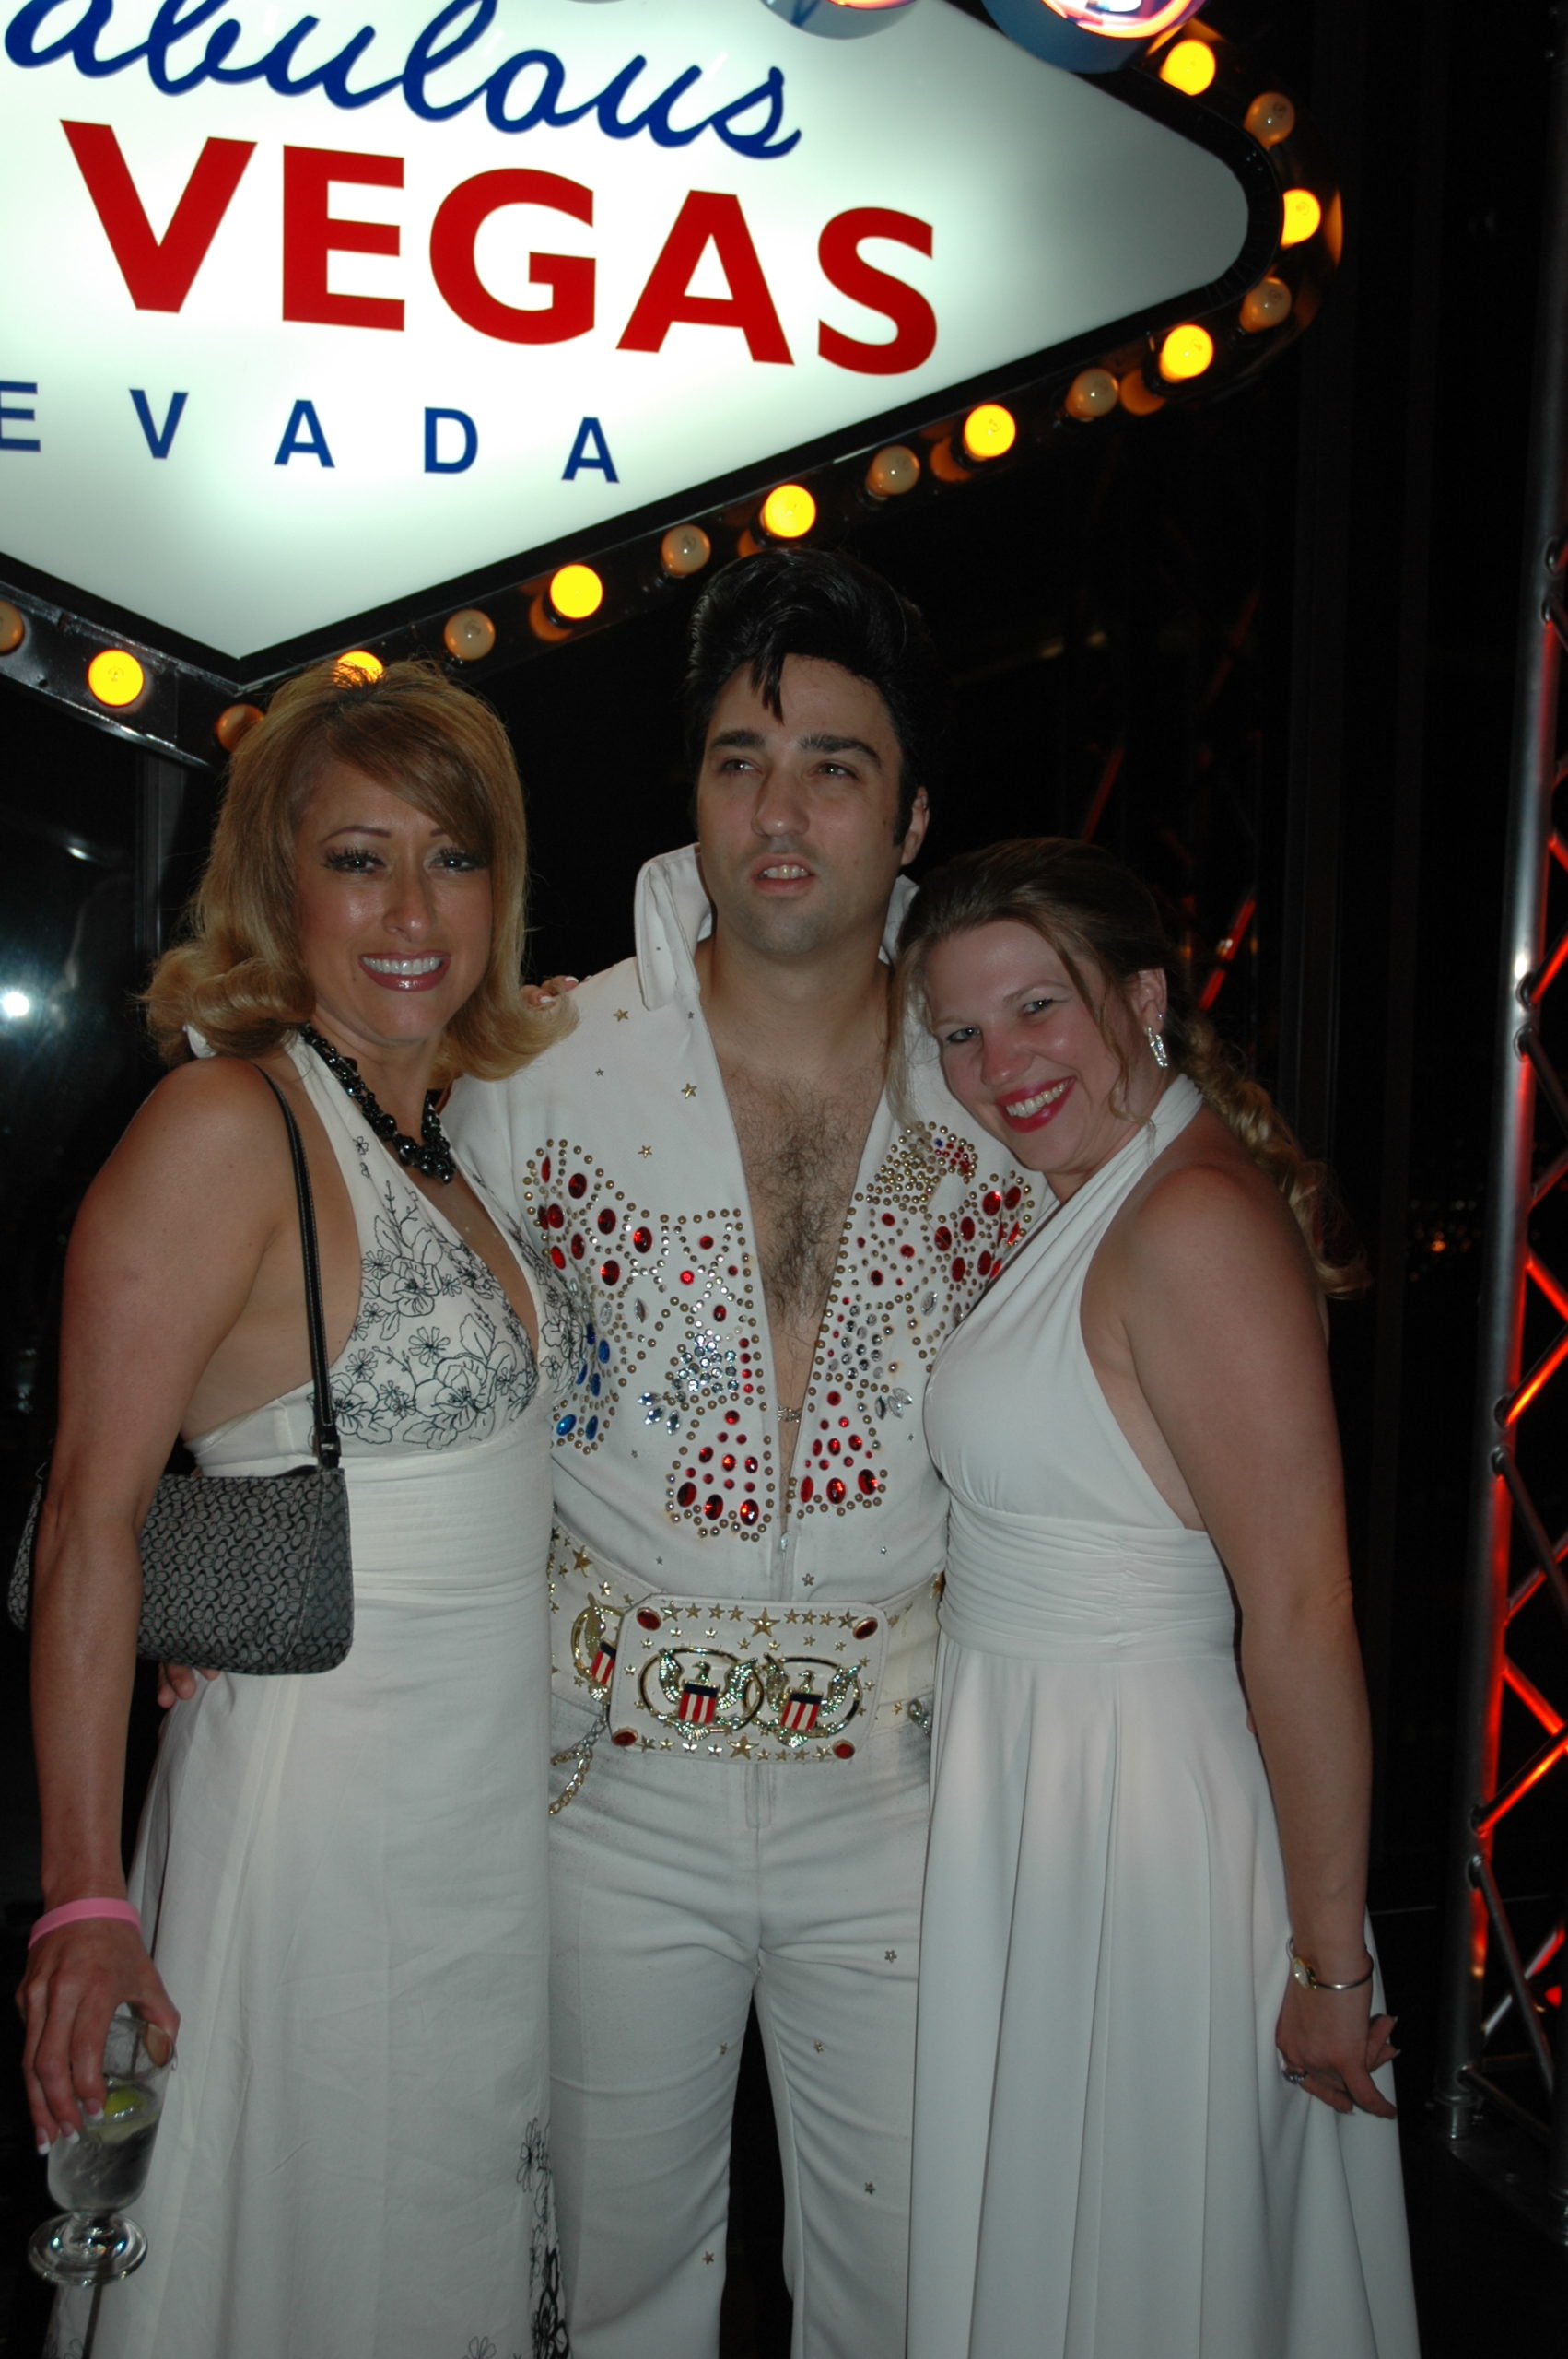 Elvis and Las Vegas